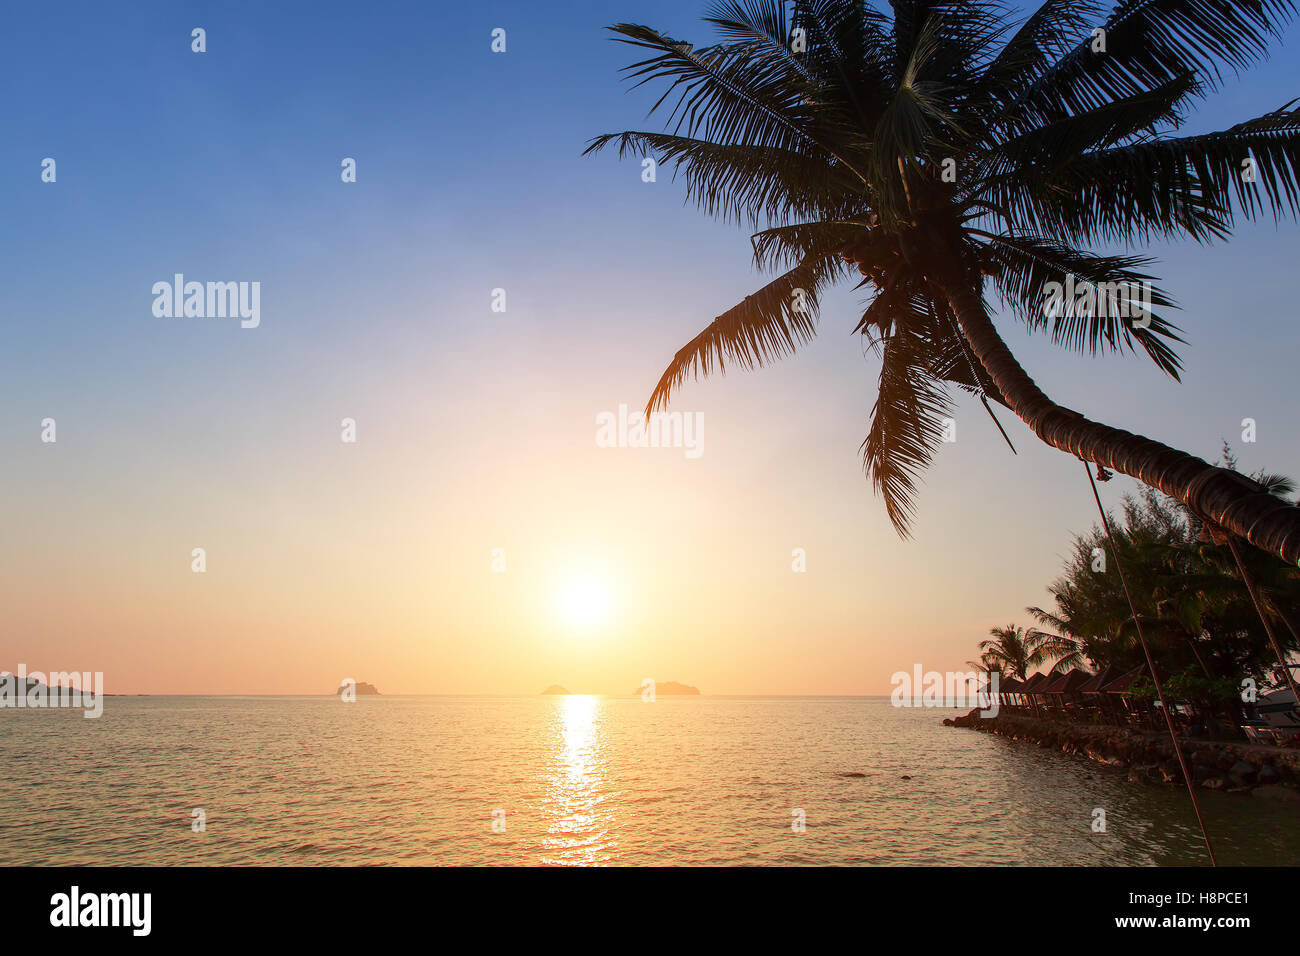 Magnifique coucher de soleil sur une plage dans les tropiques. Banque D'Images